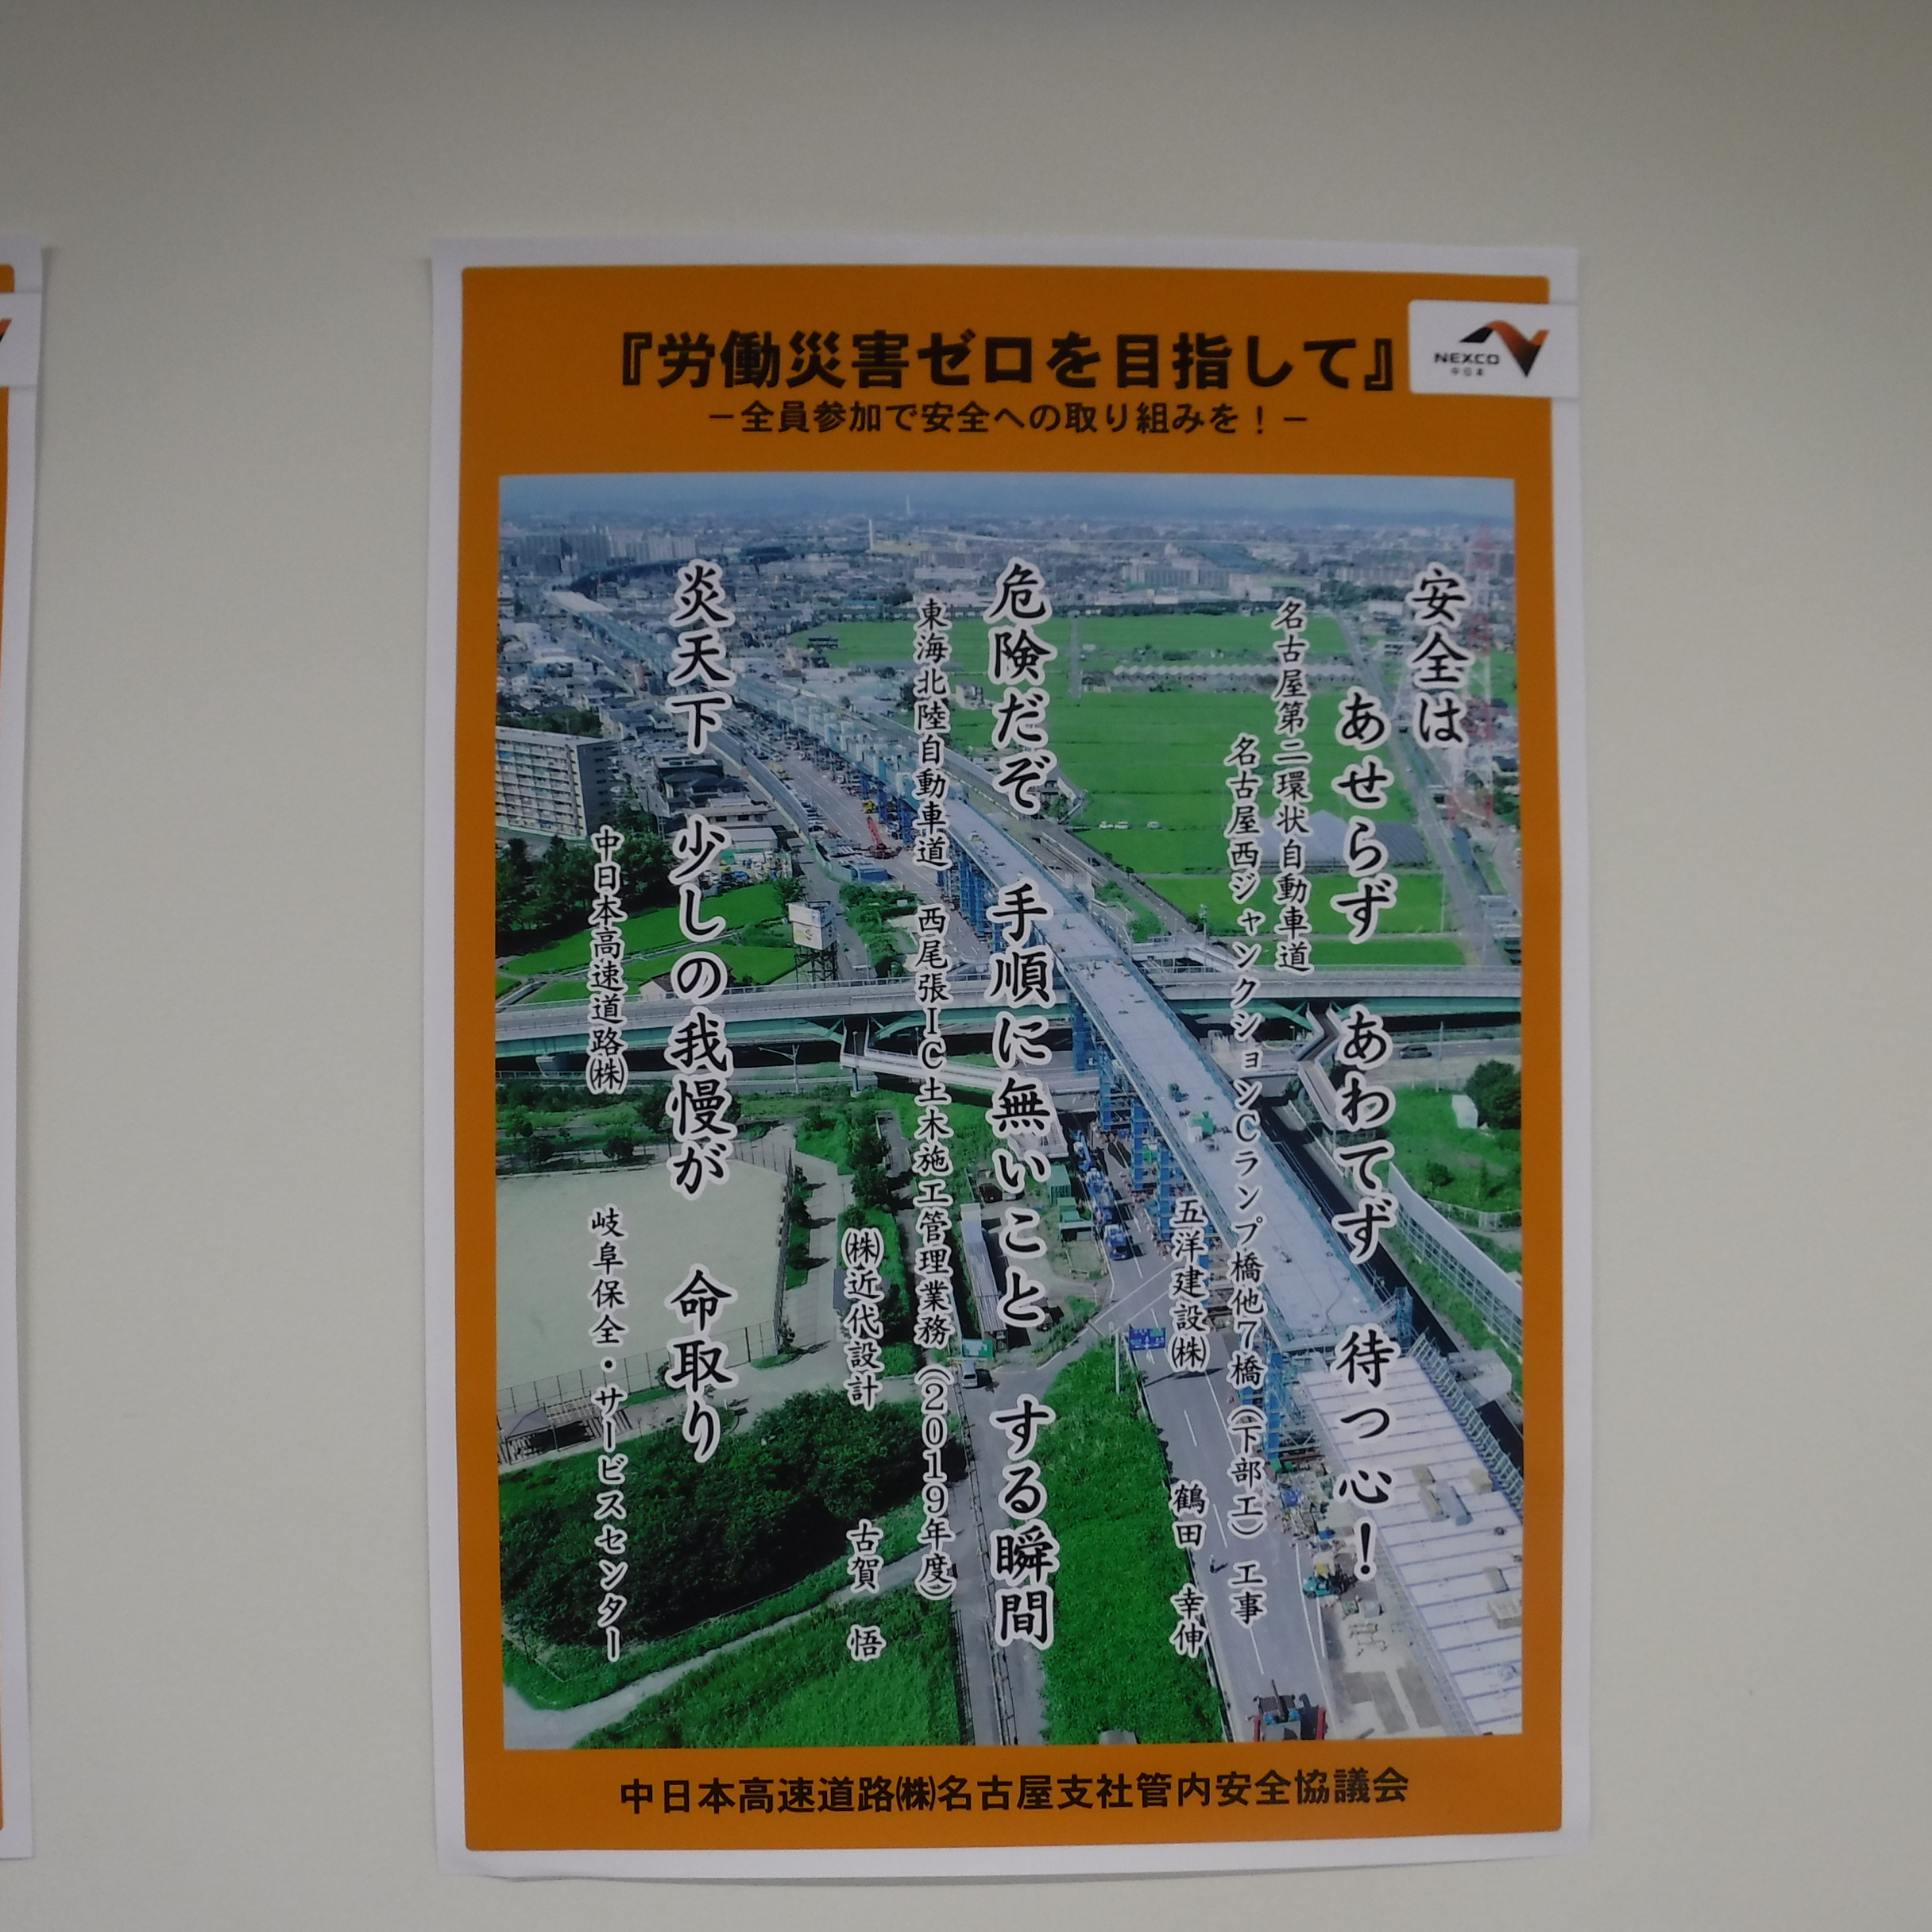 中日本高速道路㈱名古屋支社管内安全協議会4